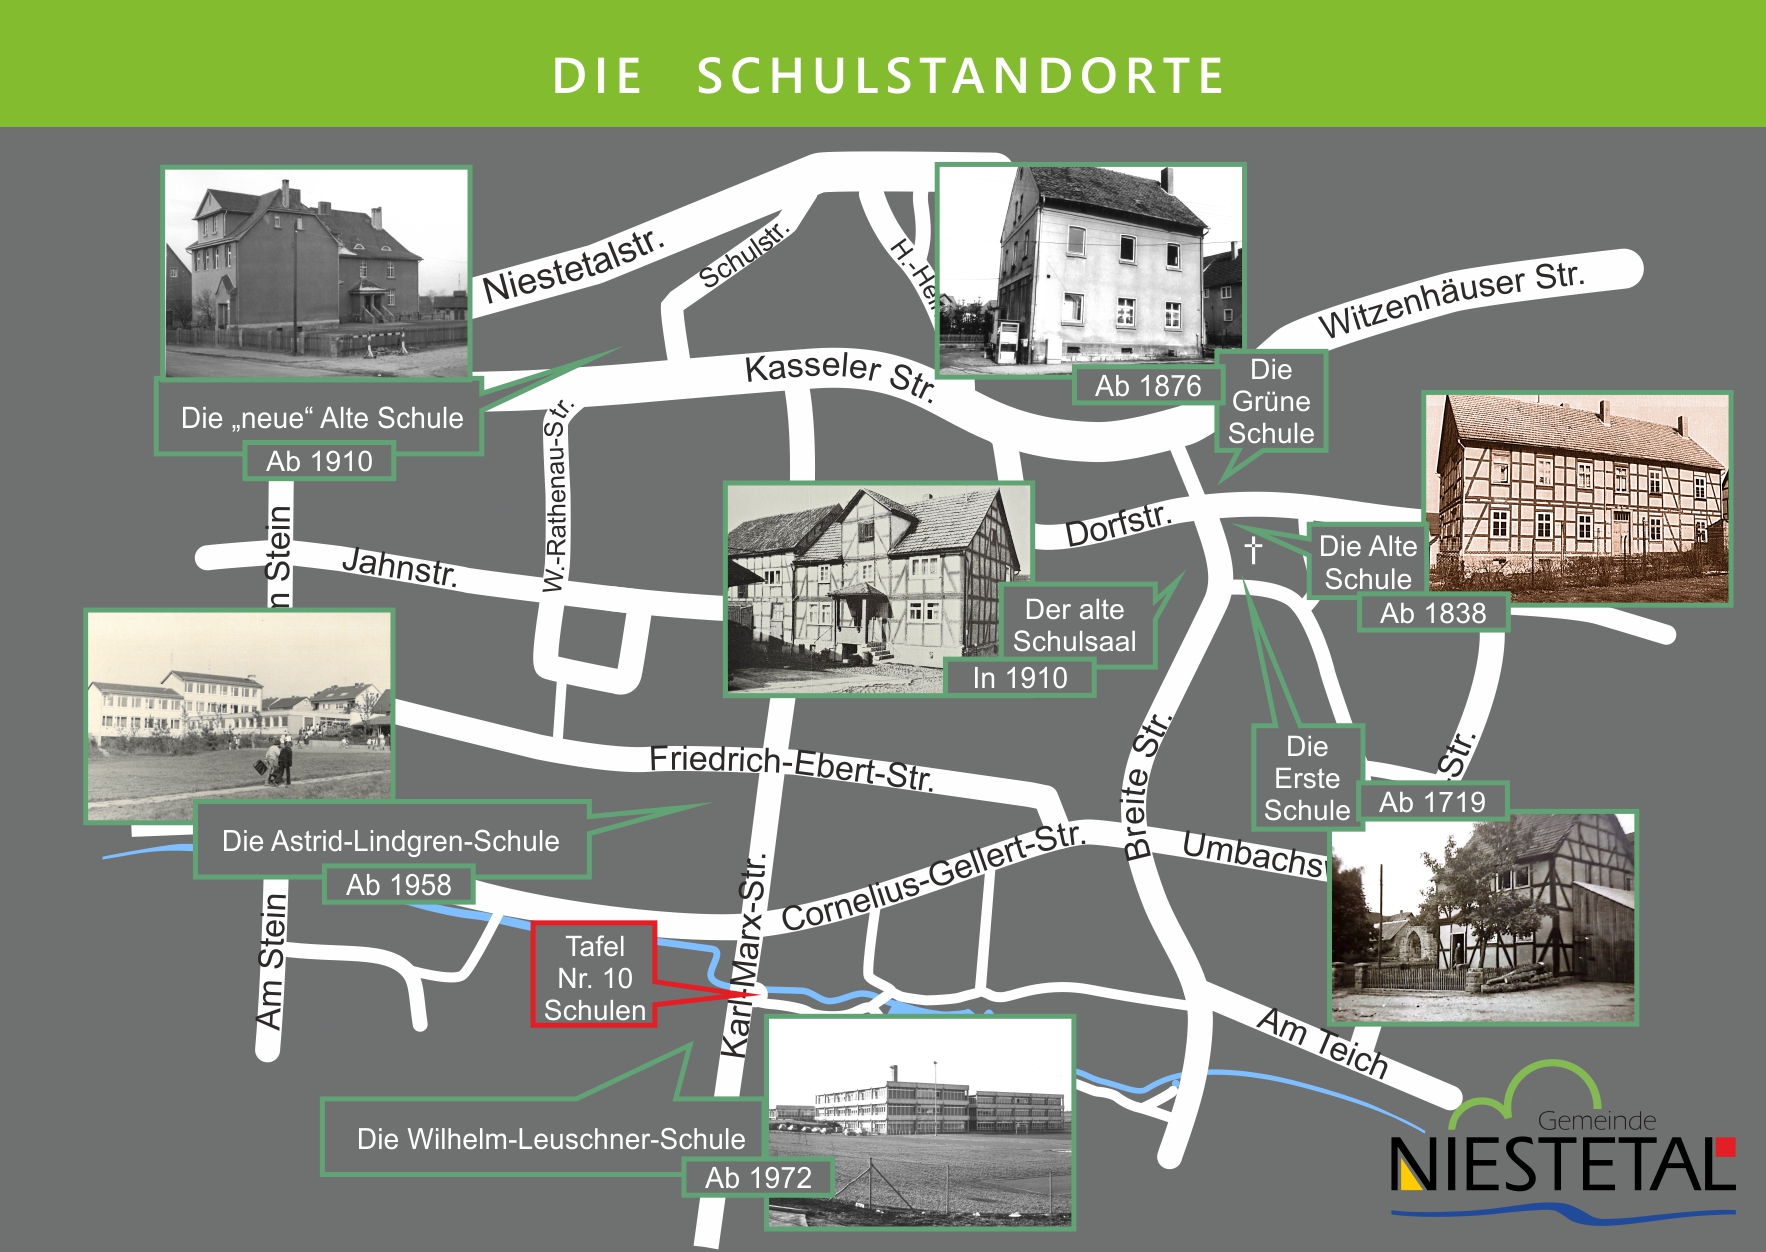 Die Standorte der Schulen im Ort, mit Bildern und dem Standort der Tafel Nr. 10 - Schulen am Brunnen der Karl-Marx-Str. @Gemeinde Niestetal